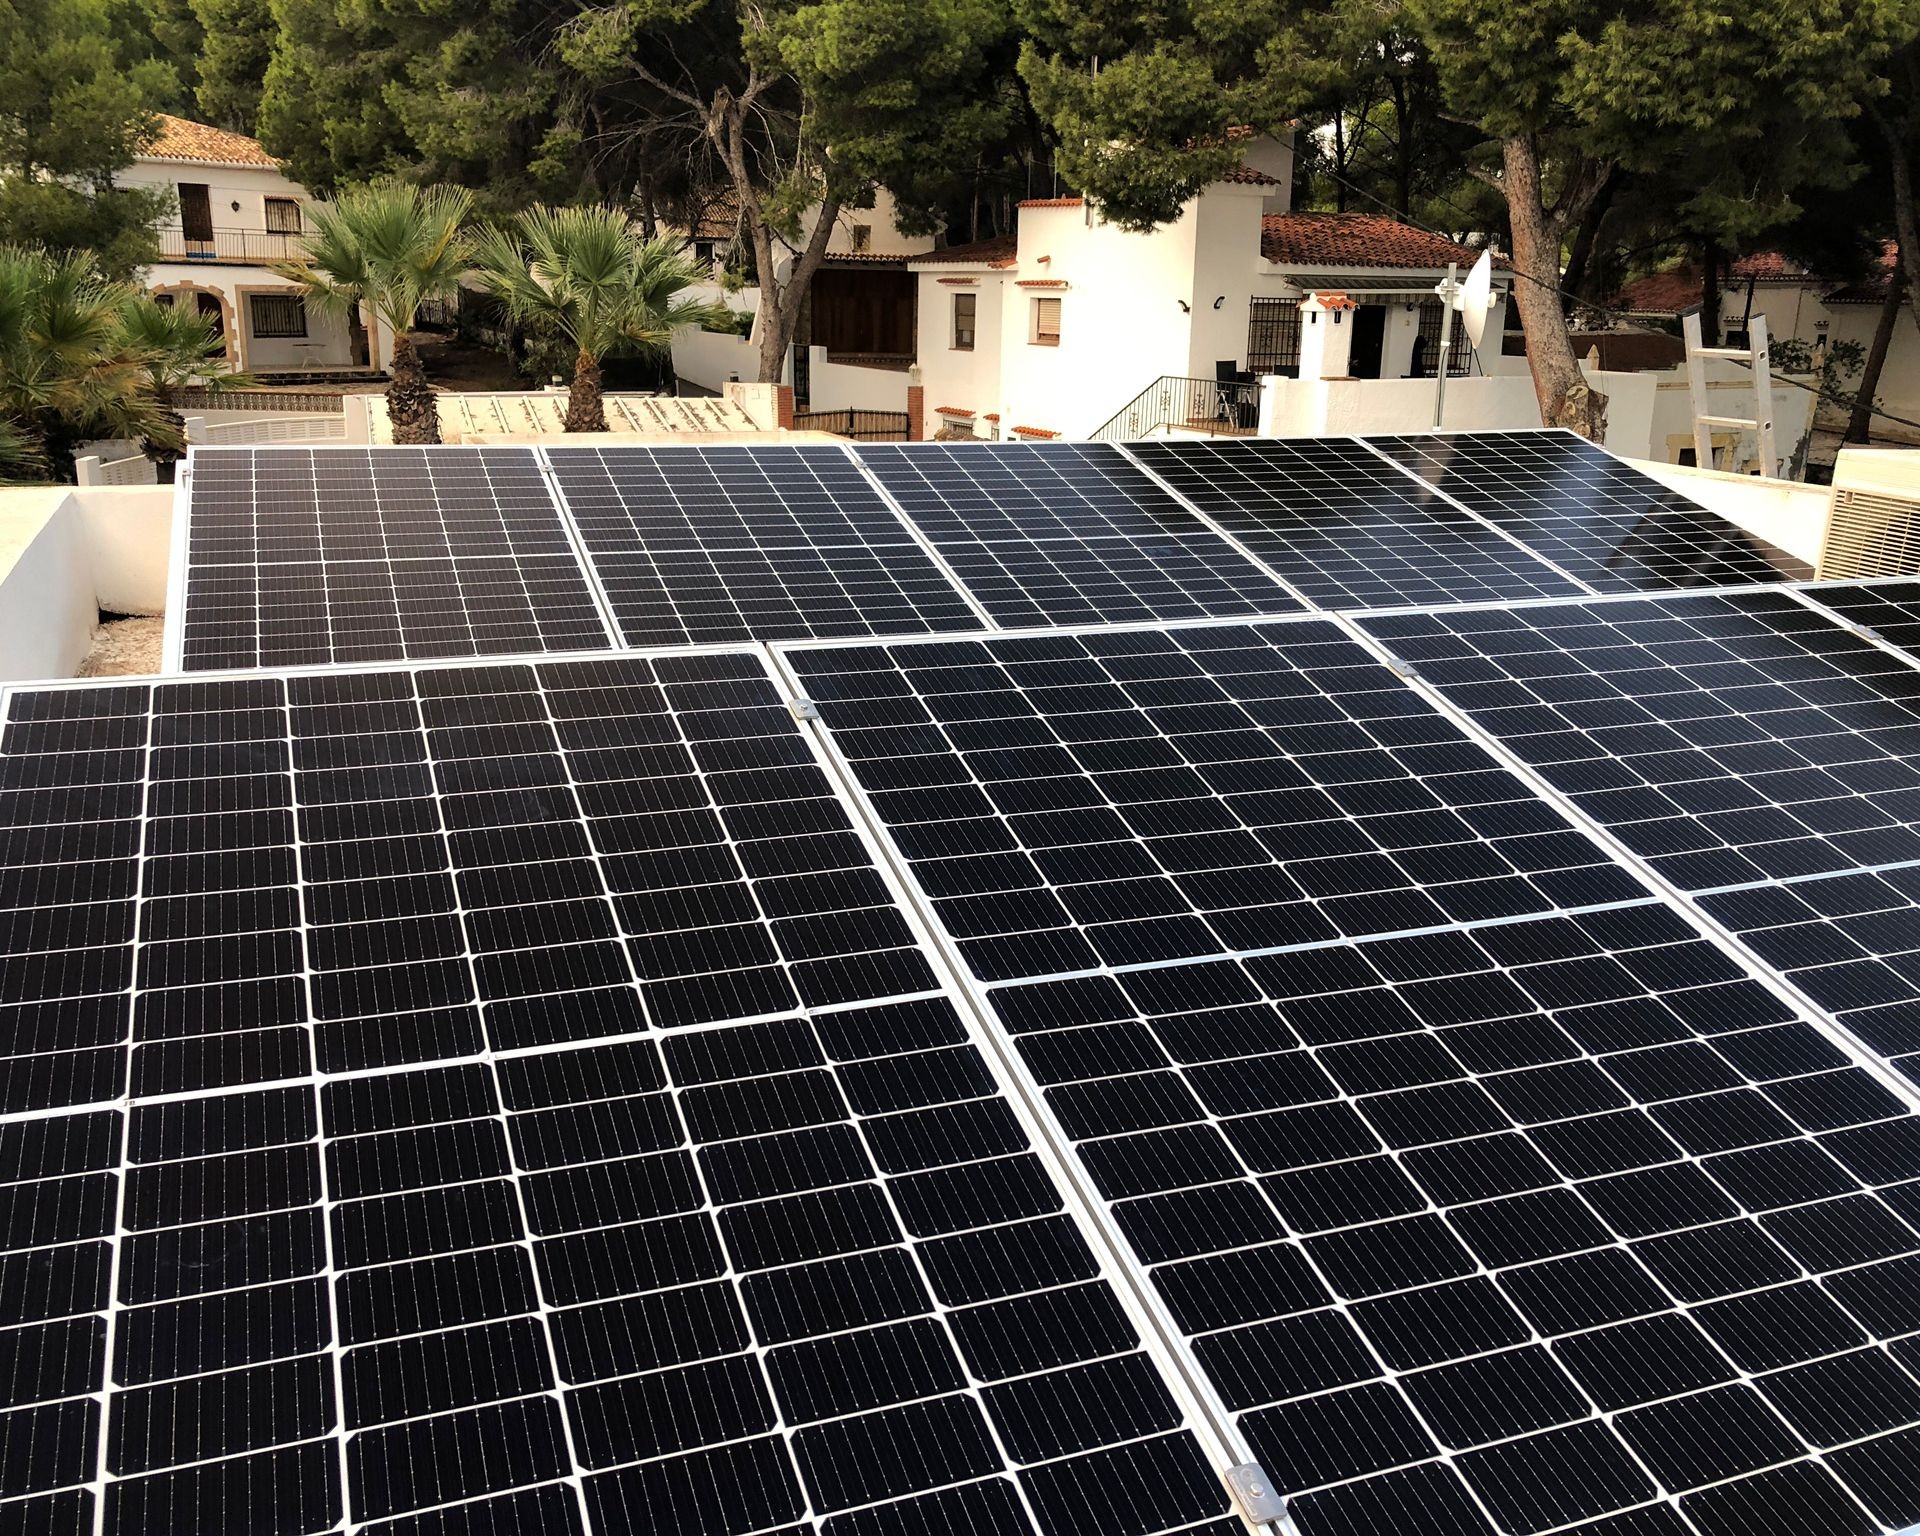 10X 380 wp Paneles Solares, Teulada, Alicante (Sistema híbrido)